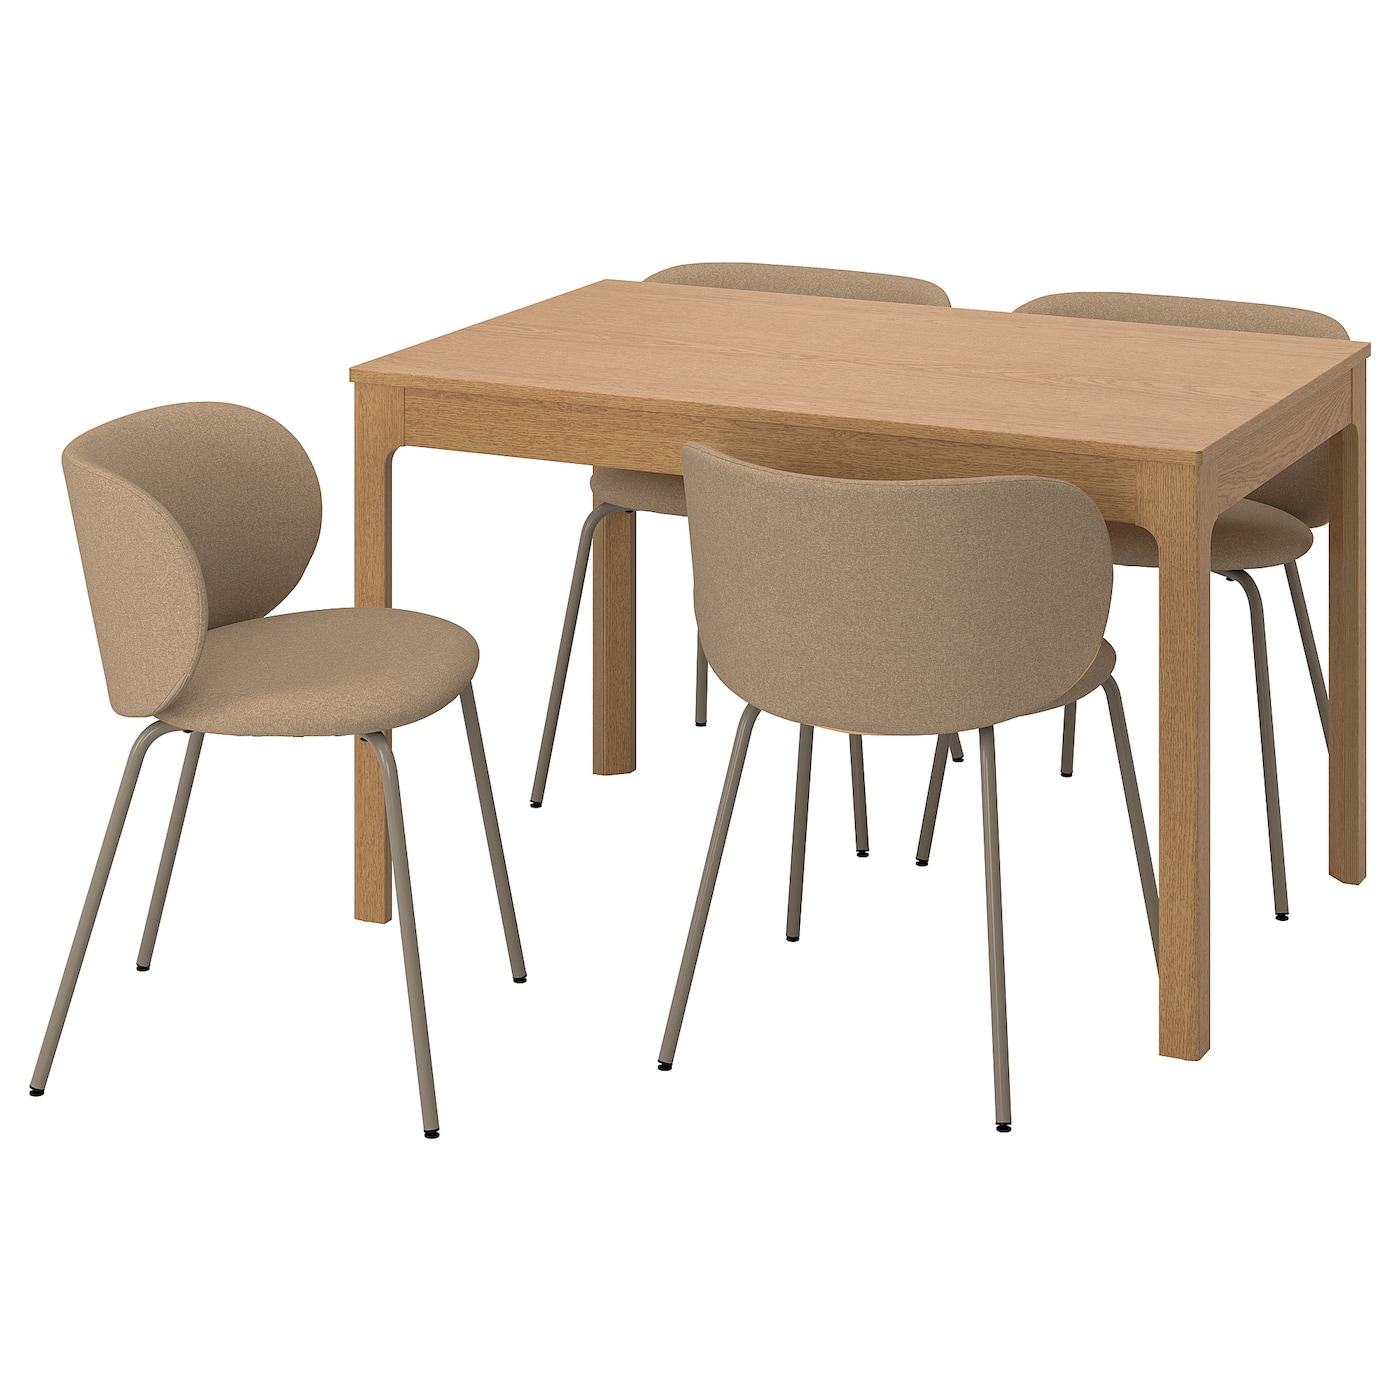 Стол и 4 стула - EKEDALEN / KRYLBO IKEA/ ЭКЕДАЛЕН/КРЫЛЬБО ИКЕА, 180/120х80х75 см, коричневый